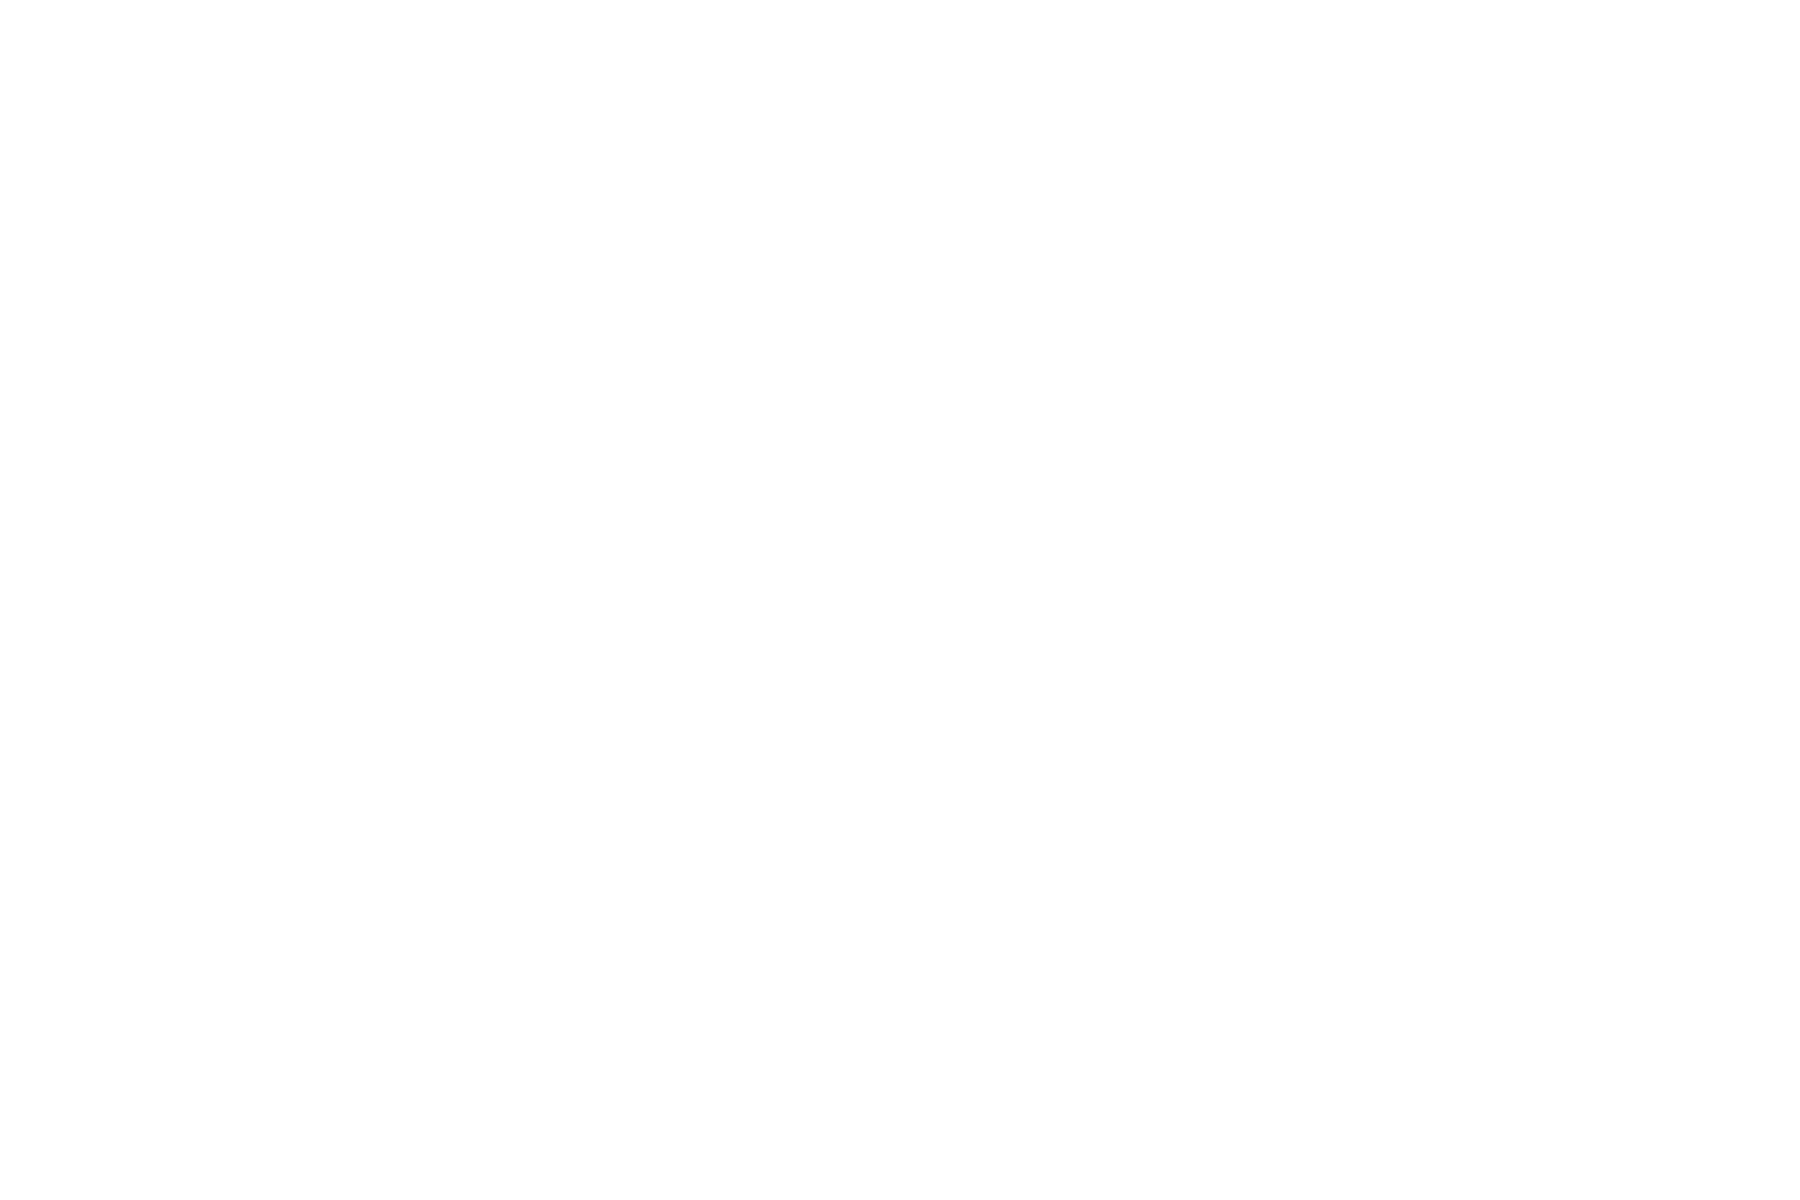 Arthurs of Charlotte